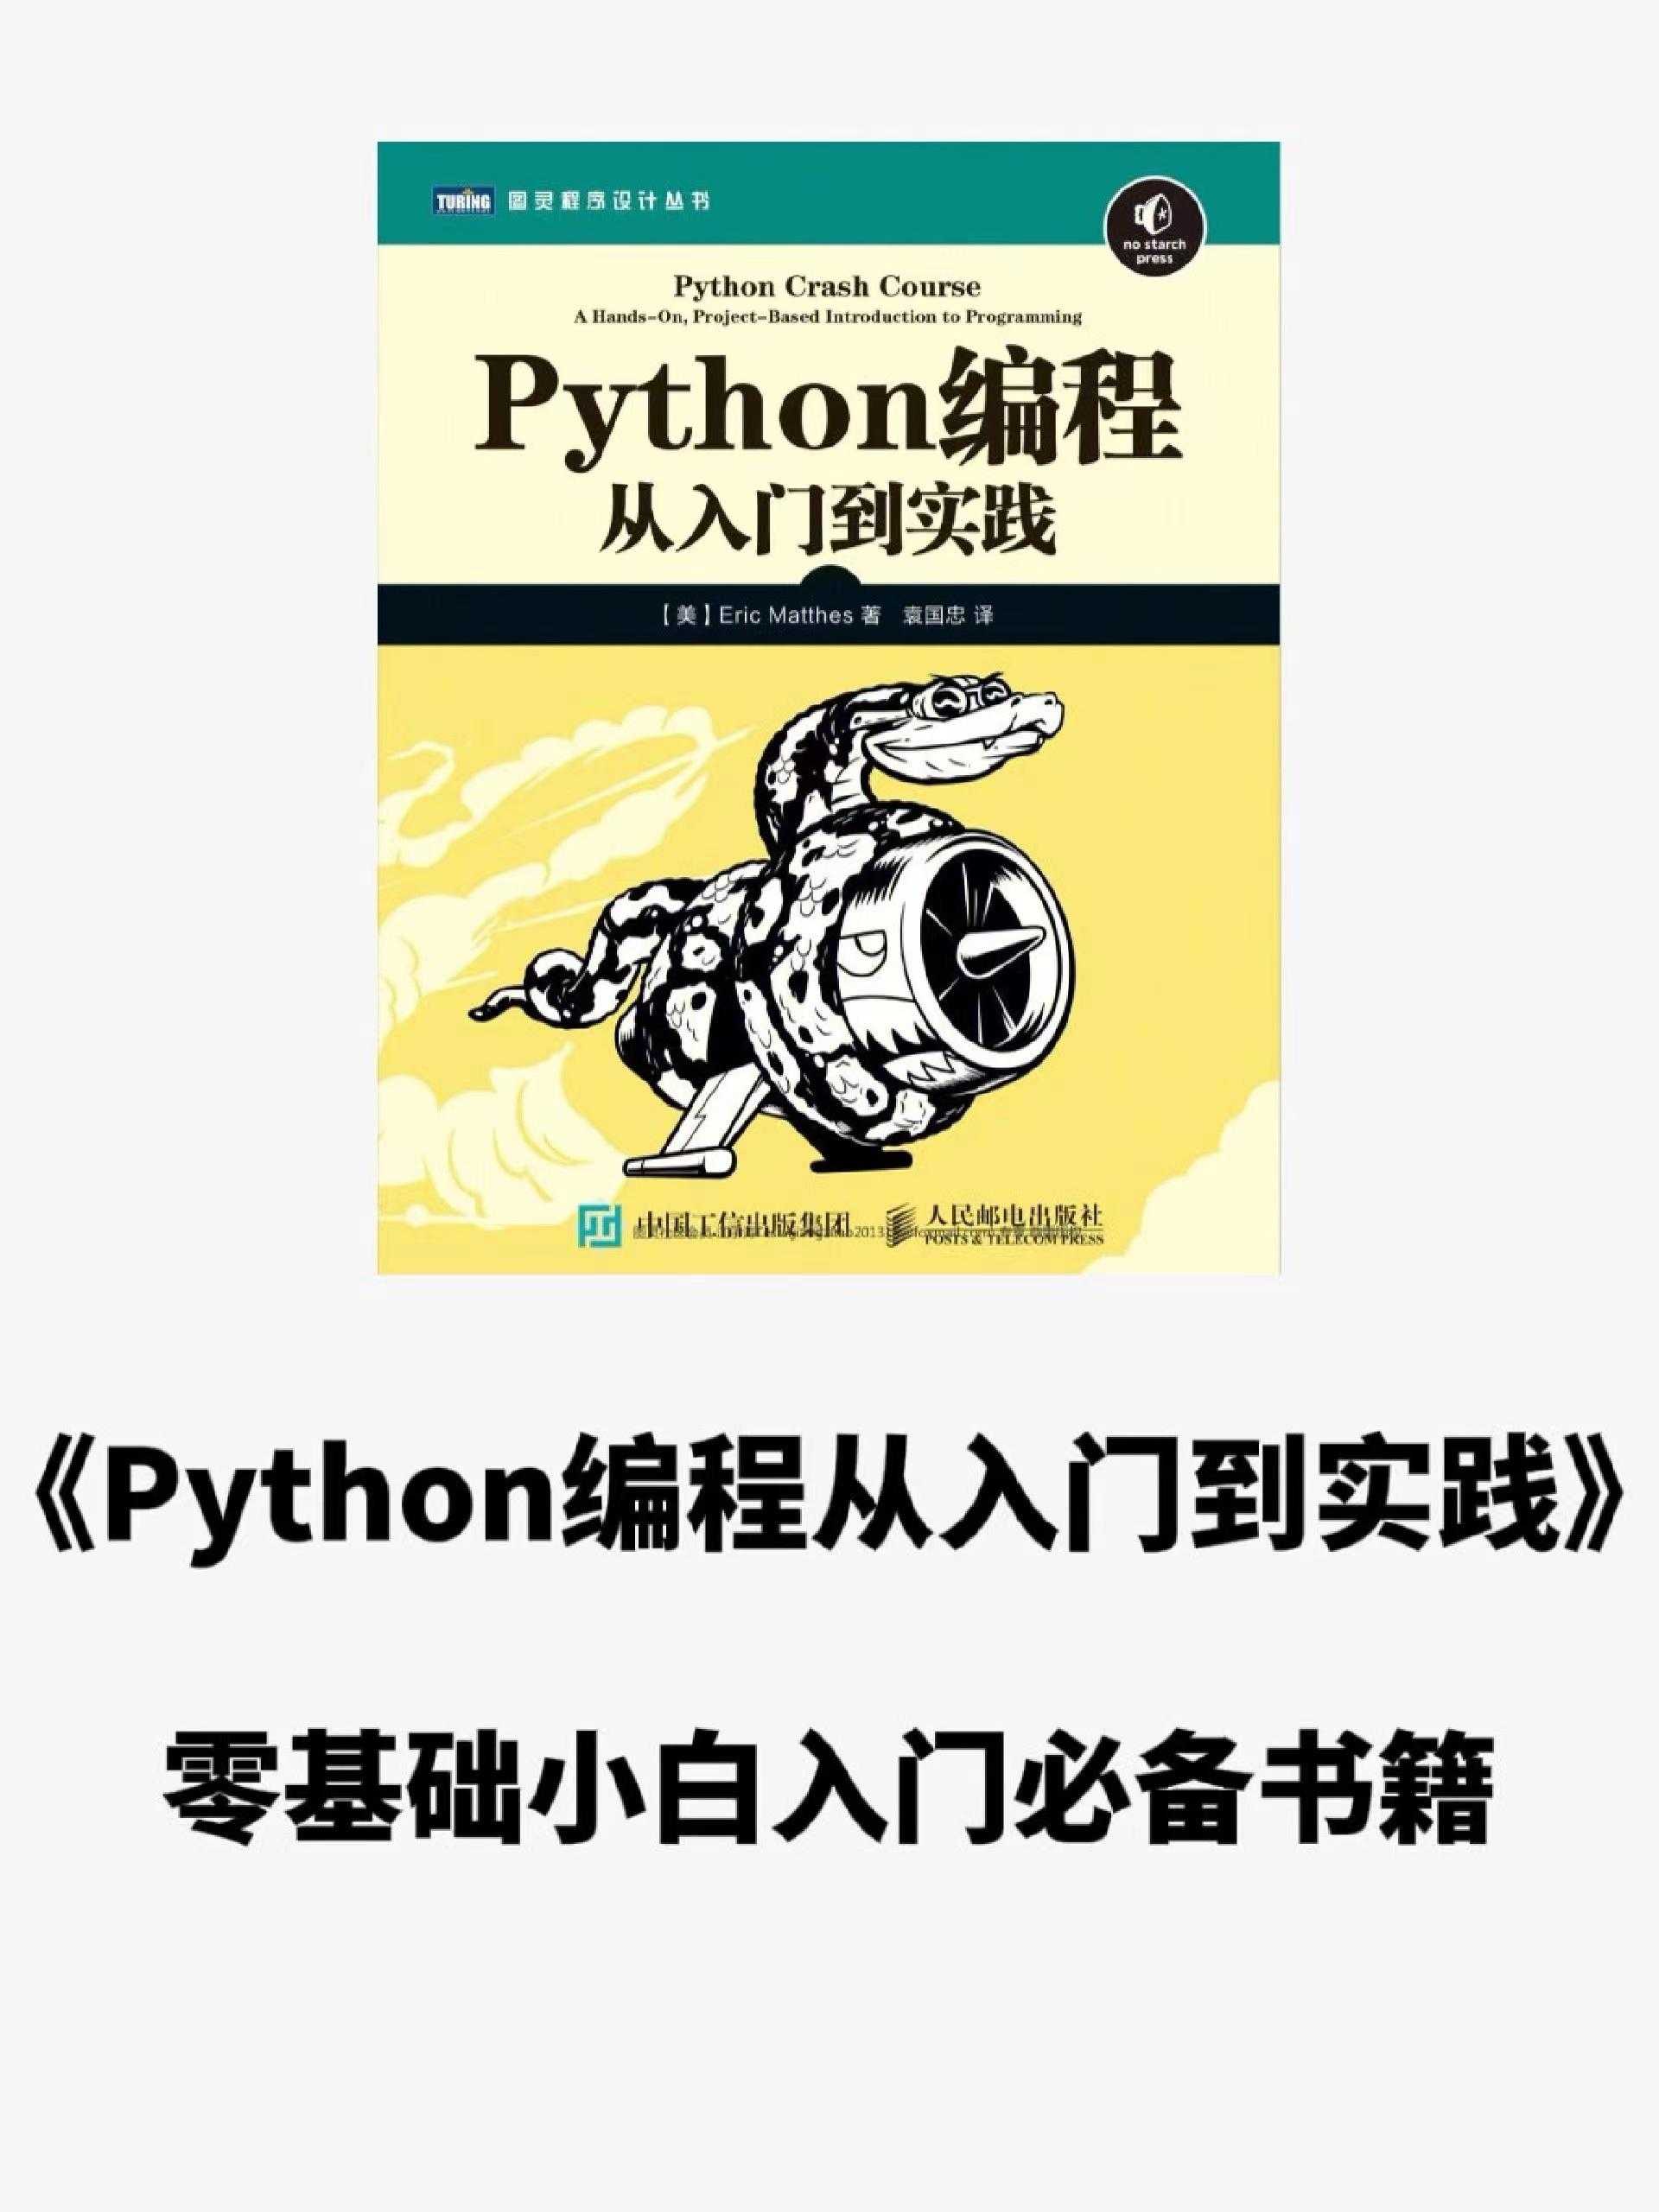 强推：零基础入门小白必备书籍《python编程从入门实践》拿走不谢